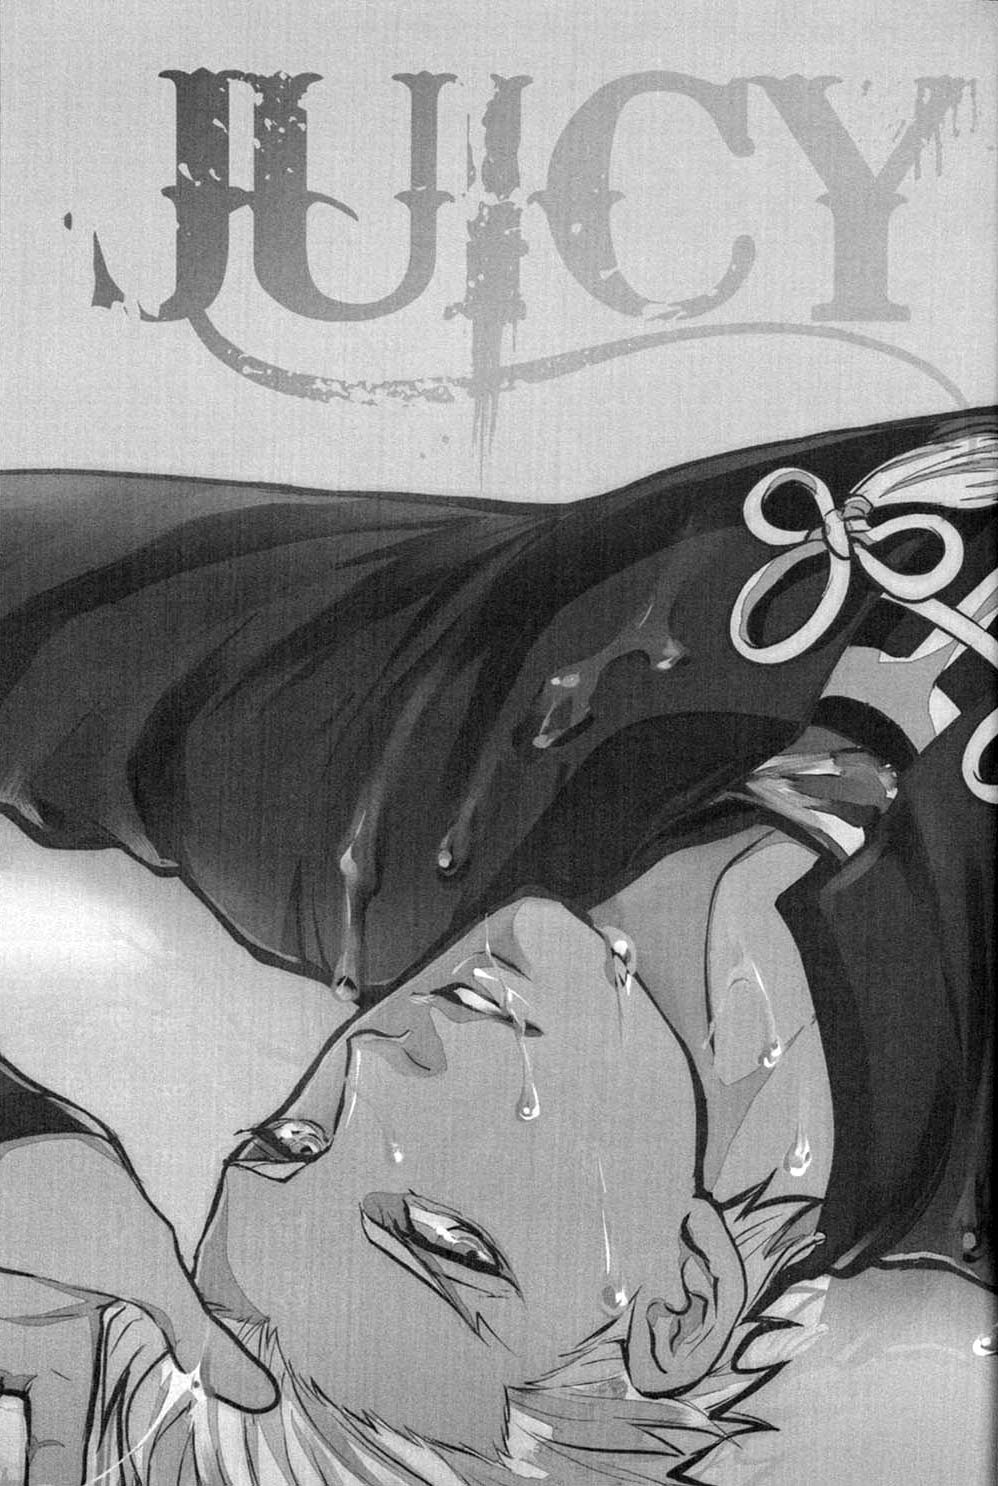 [1000+10 (Atsuyu)] Juicy Chapter 1 (Fate/Stay Night)(English) 